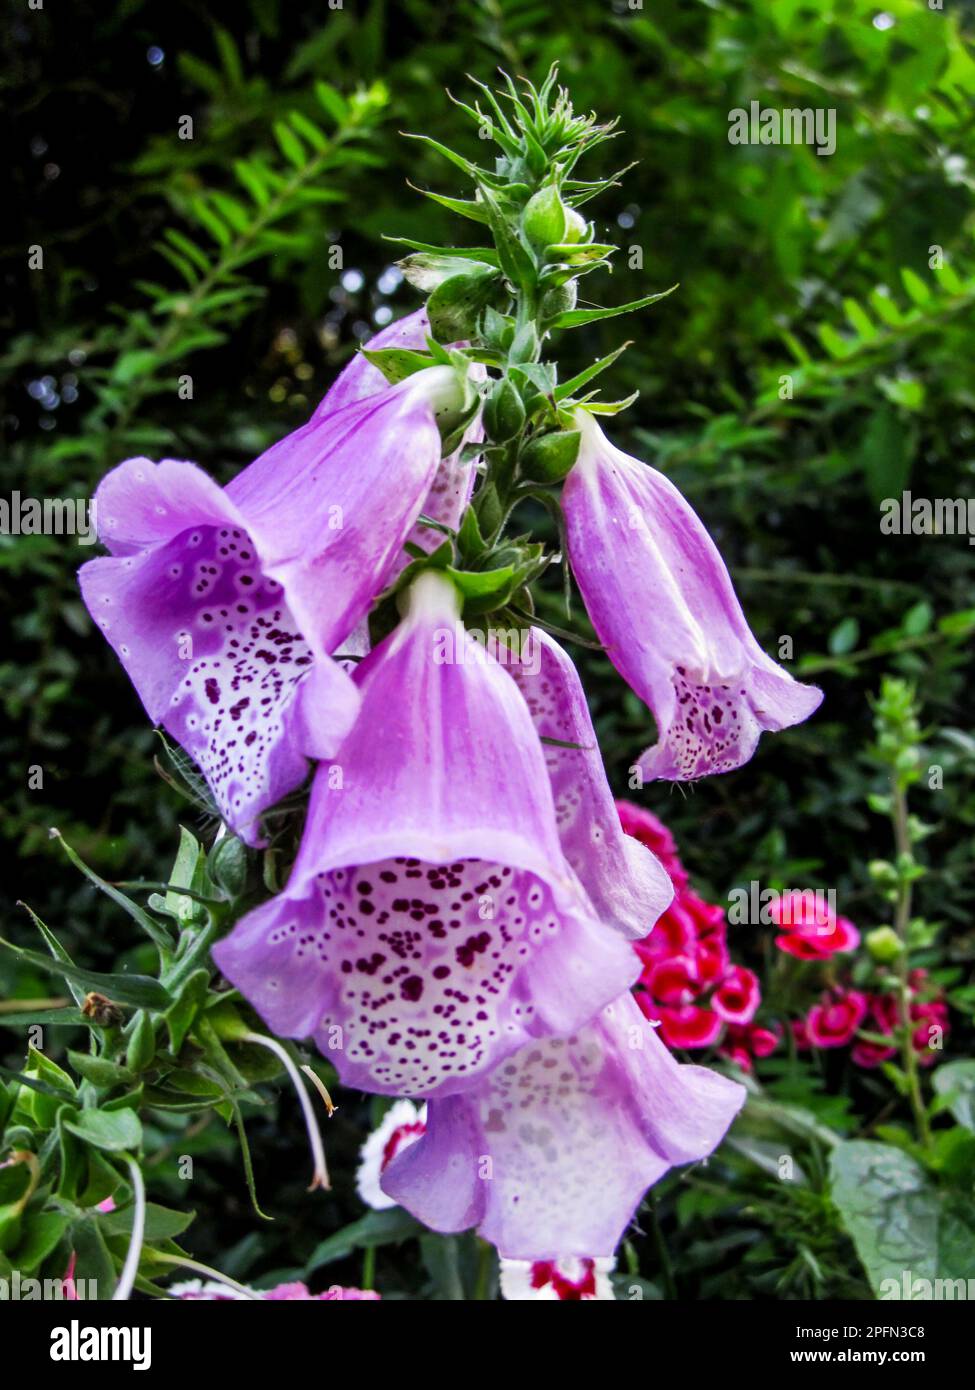 Rosa Lila, Foxglove, Digitalis purpurea, Blumen. Foxhandschuh, ursprünglich aus Europa und dem Mittelmeer, ist eine schöne, aber hochgiftige Blume Stockfoto